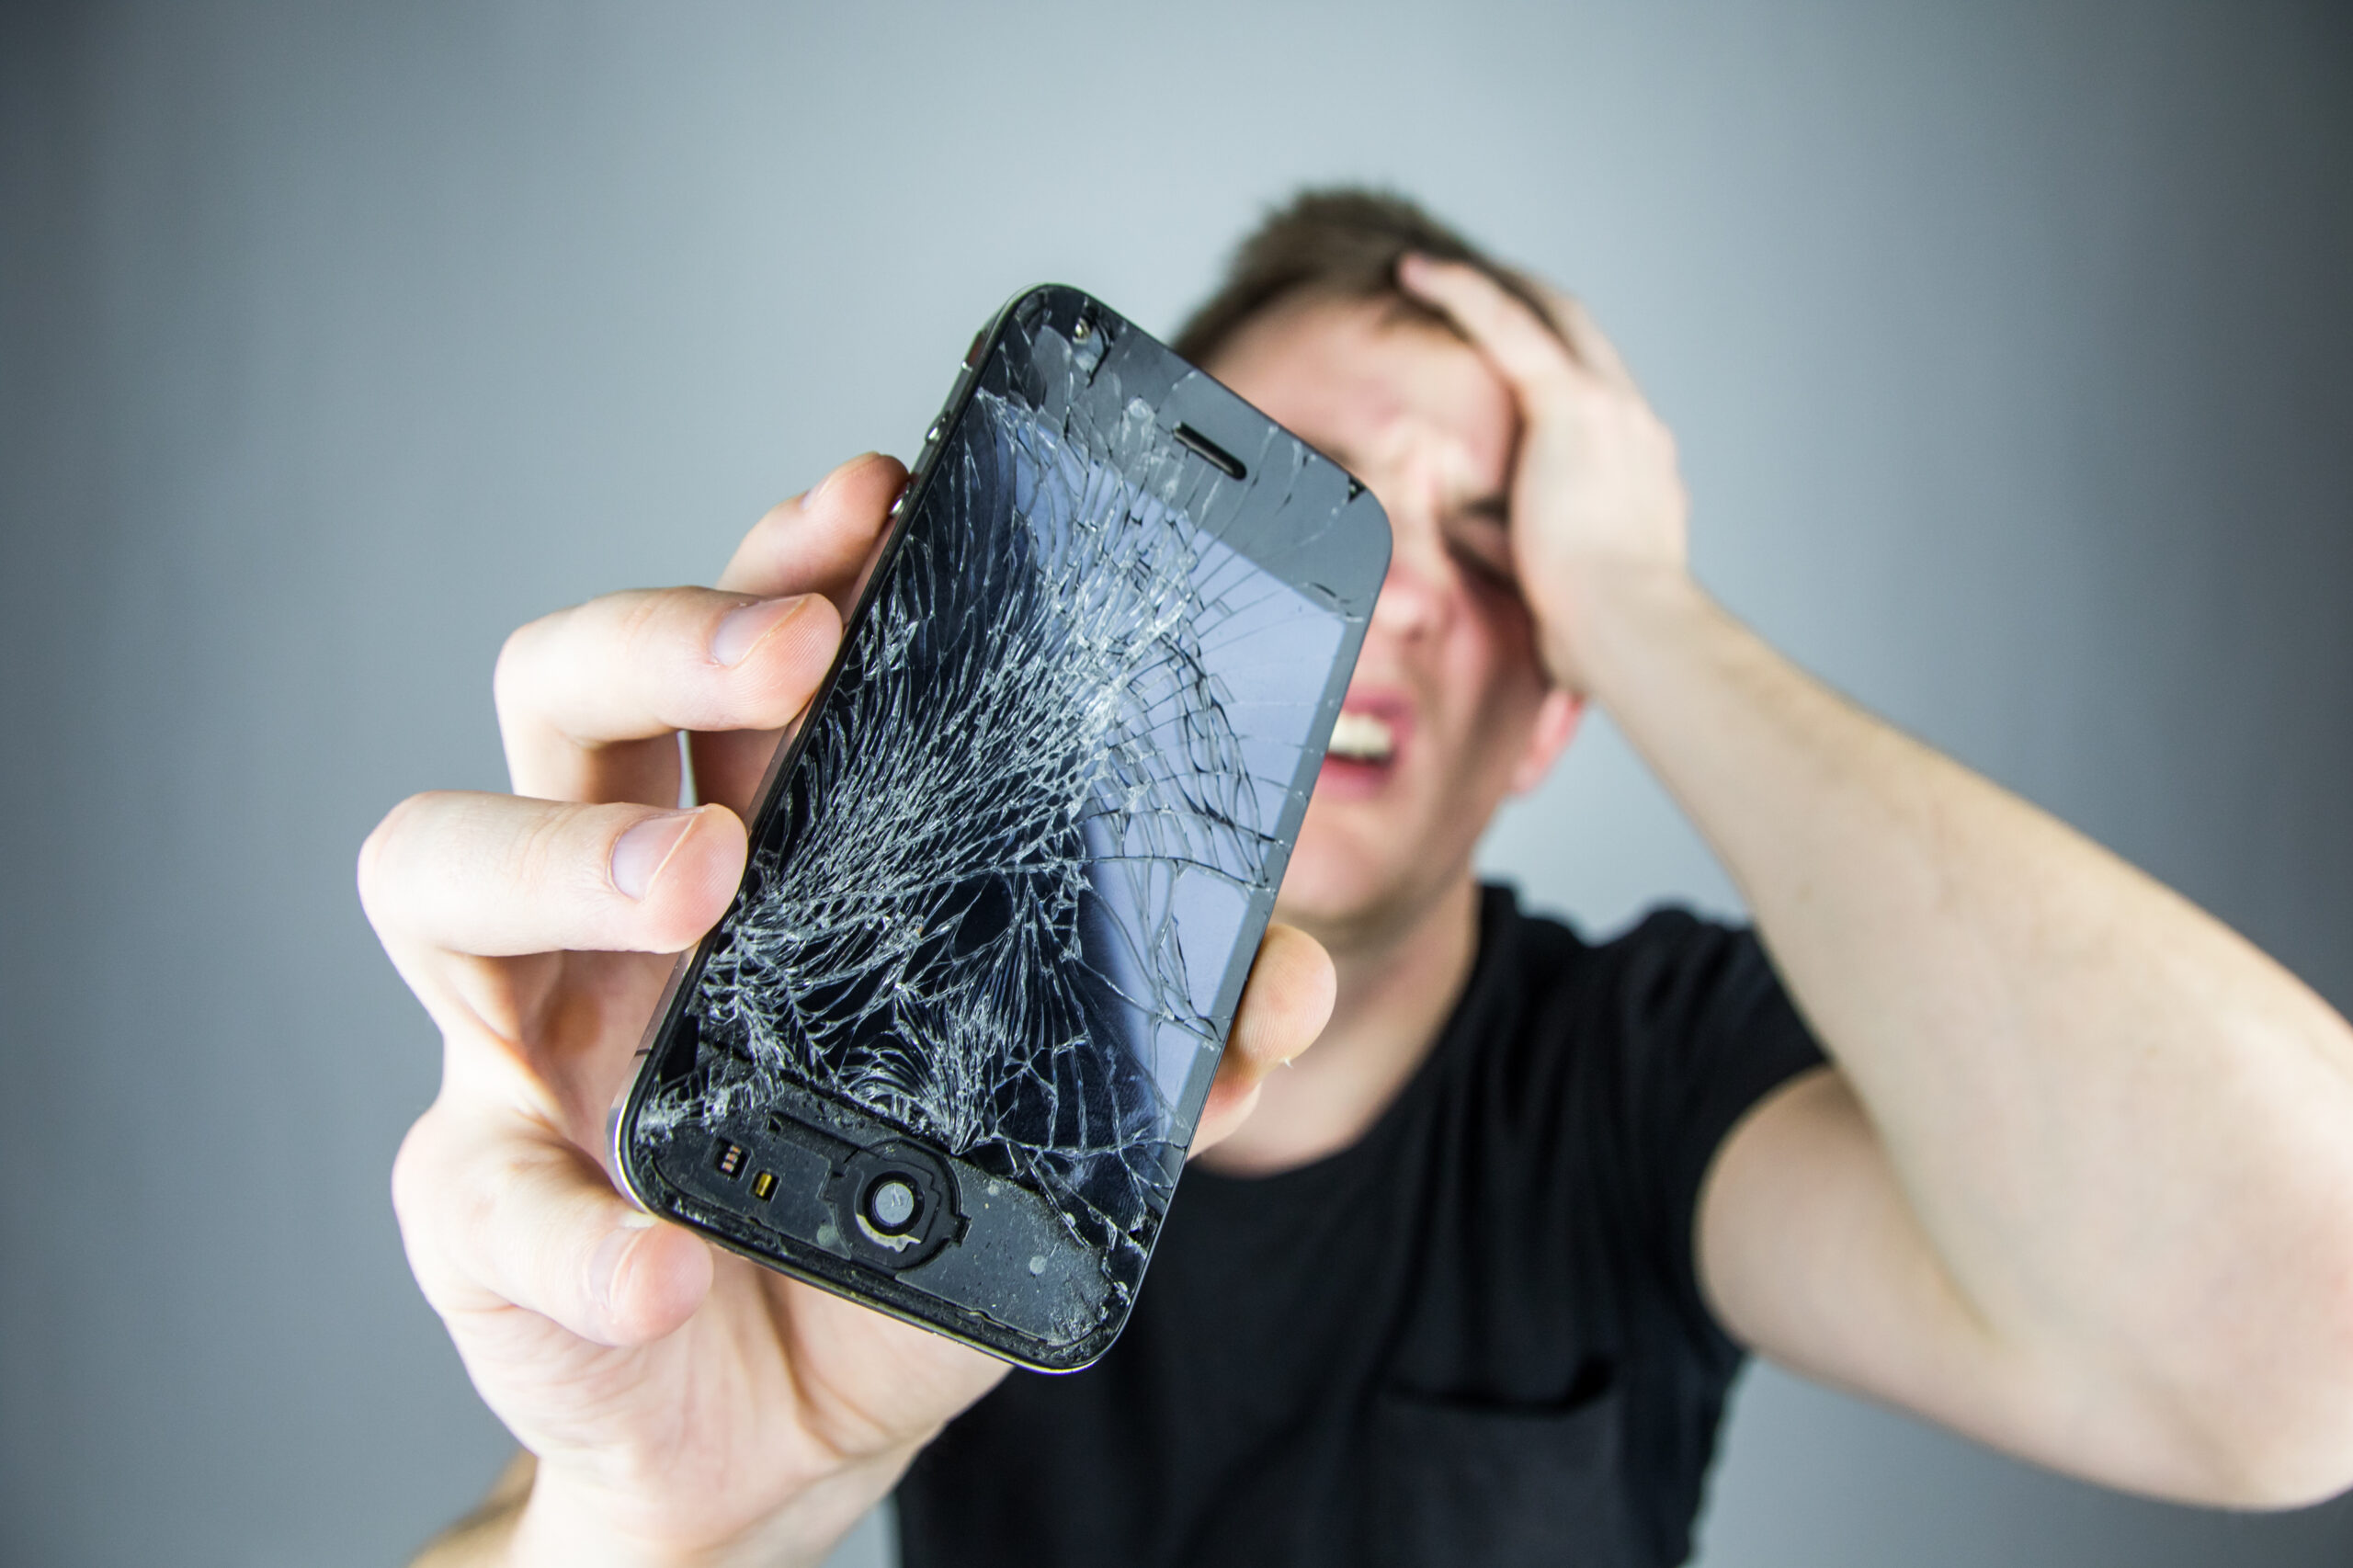 در تصویر مشاهده می‌شود که یک مرد جوان با نگرانی و ناامیدی به گوشی هوشمند شکسته خود نگاه می‌کند. این صحنه نمایانگر اهمیت بیمه موبایل است که می‌تواند در چنین مواقعی به کاربران کمک کند تا از پس هزینه‌های تعمیر یا تعویض دستگاه‌های گران‌قیمت خود برآیند. بیمه موبایل به مصرف‌کنندگان این اطمینان را می‌دهد که در صورت بروز حوادثی مانند شکستگی صفحه نمایش، آسیب‌های ناشی از آب، یا سرقت، می‌توانند برای جبران خسارت اقدام کنند. این تصویر تأکید می‌کند که چگونه بیمه موبایل می‌تواند به کاهش استرس و نگرانی‌های مالی ناشی از آسیب‌های احتمالی کمک کند.